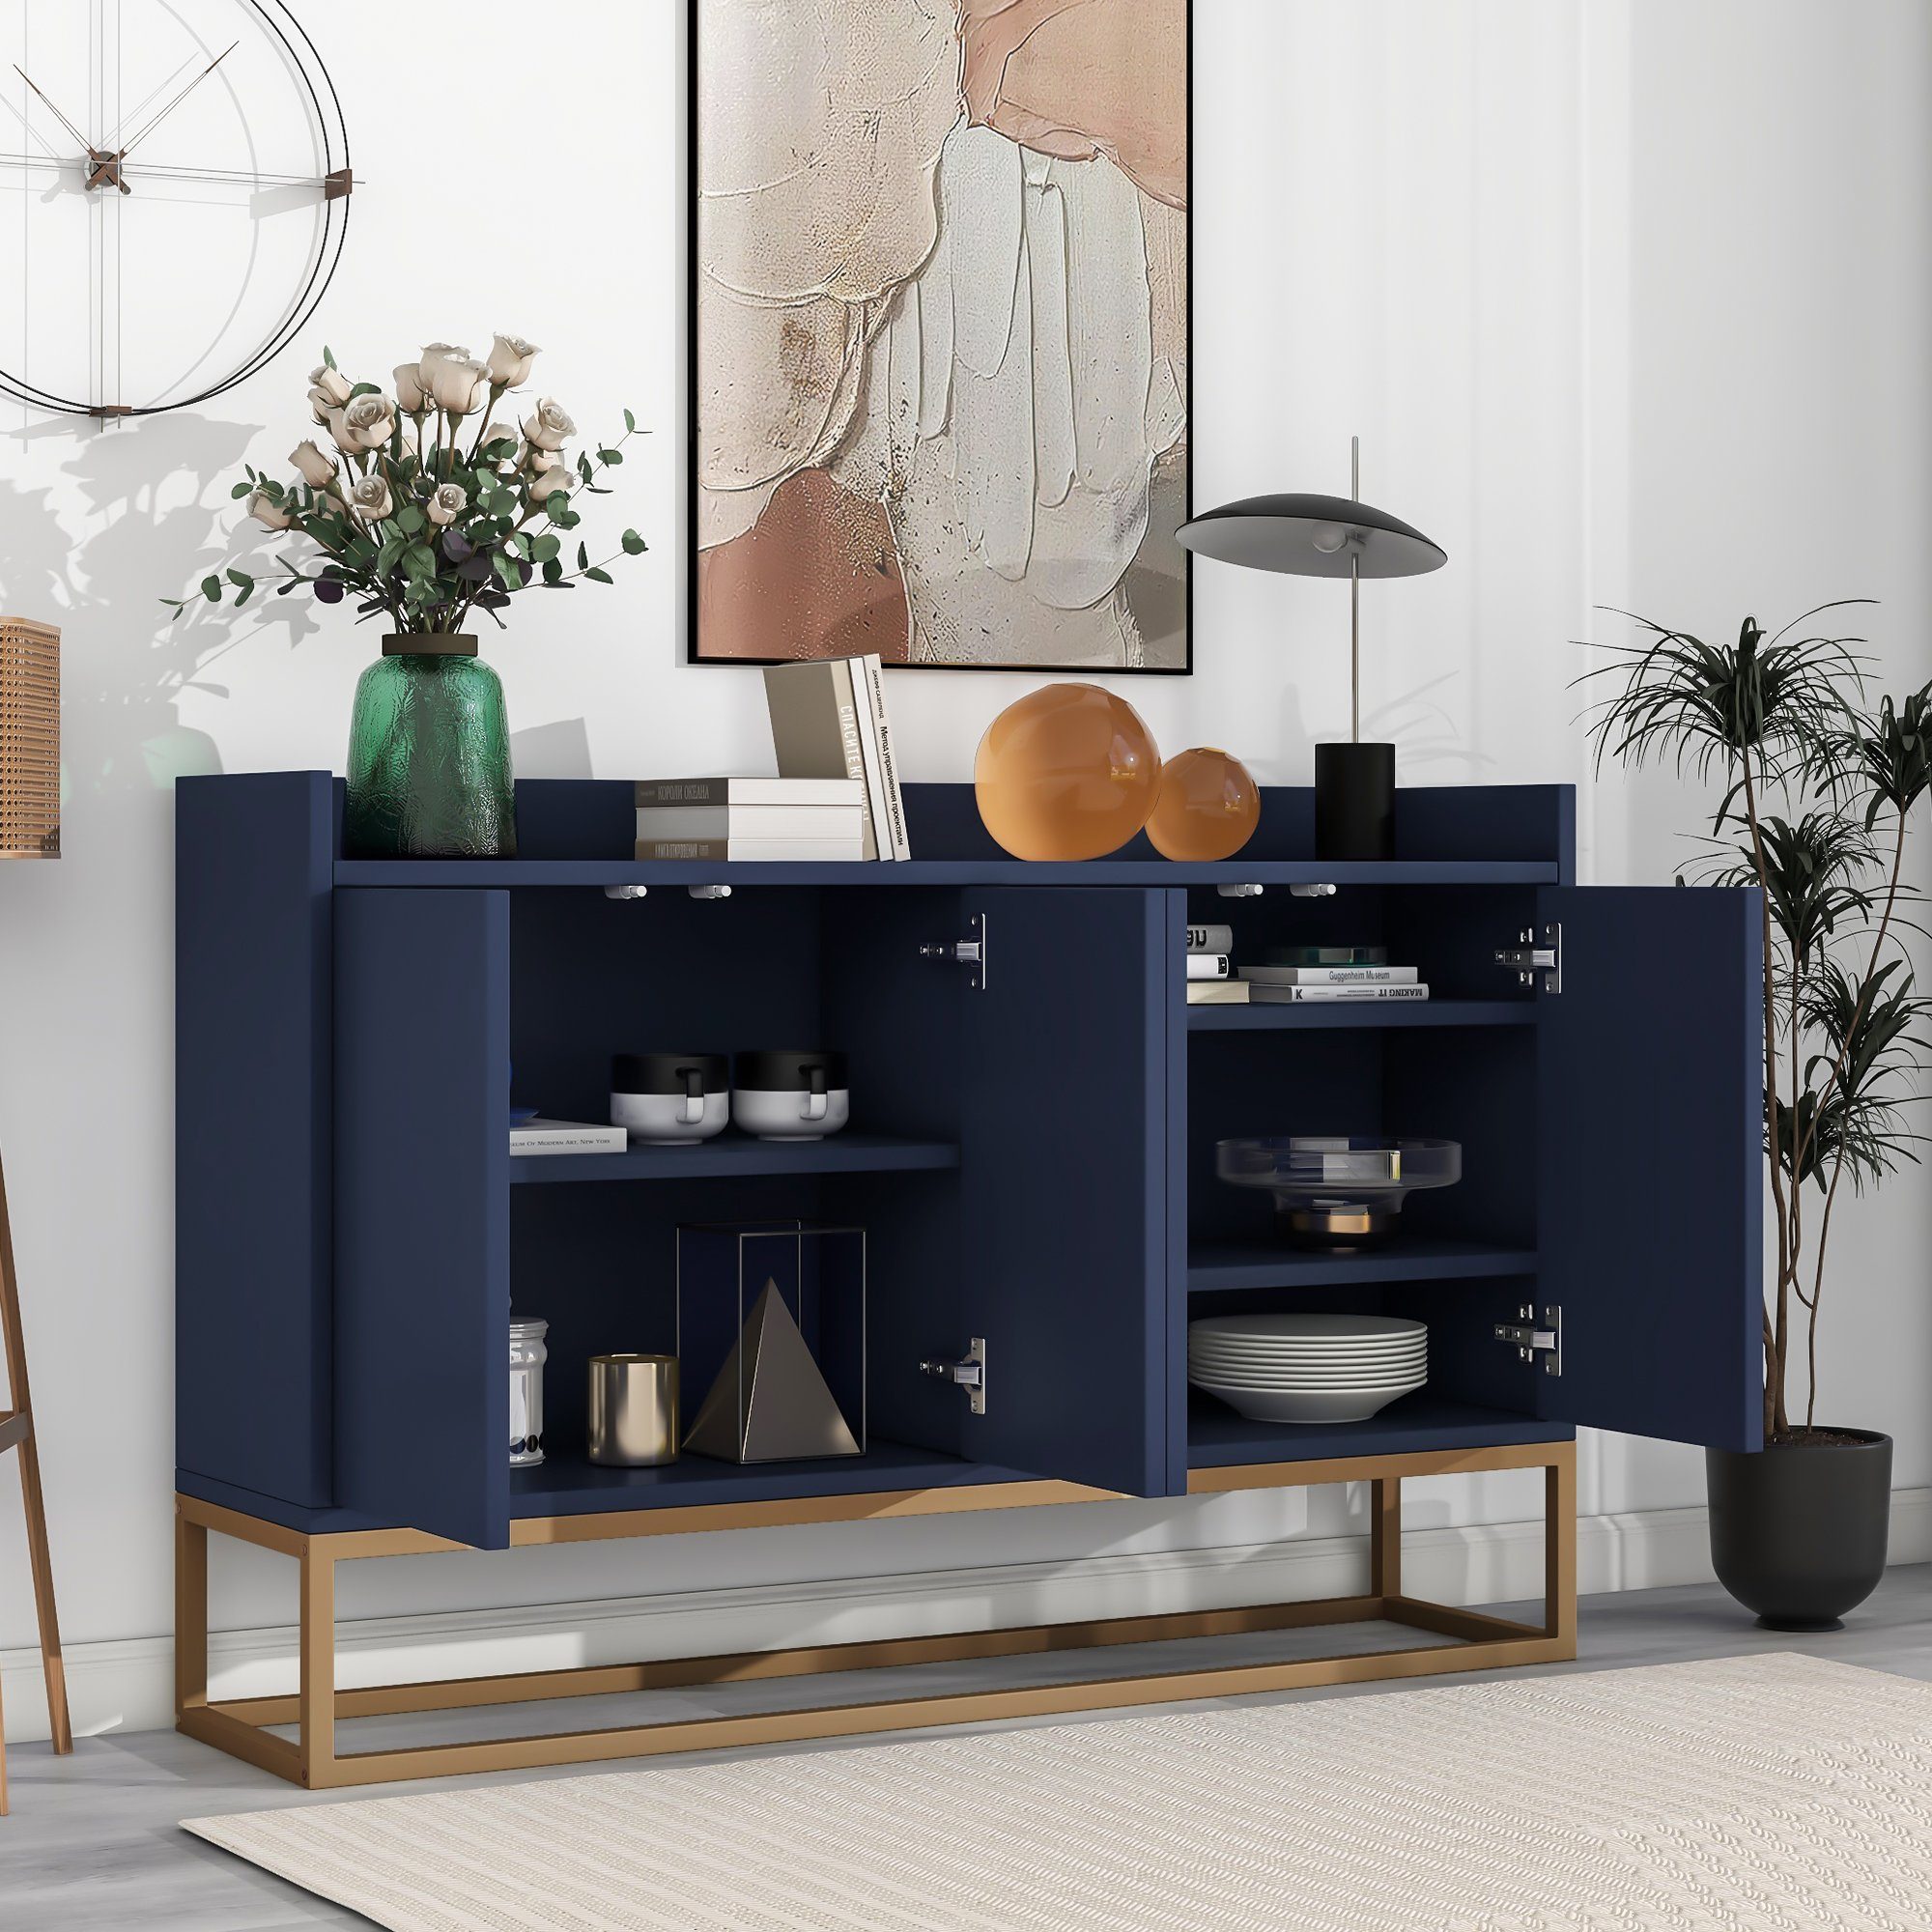 WISHDOR Anrichte Küchenschrank, Modernes Sideboard im minimalistischen Stil 4-türiger (griffloser Buffetschrank für Esszimmer, Wohnzimmer, Küche) blau